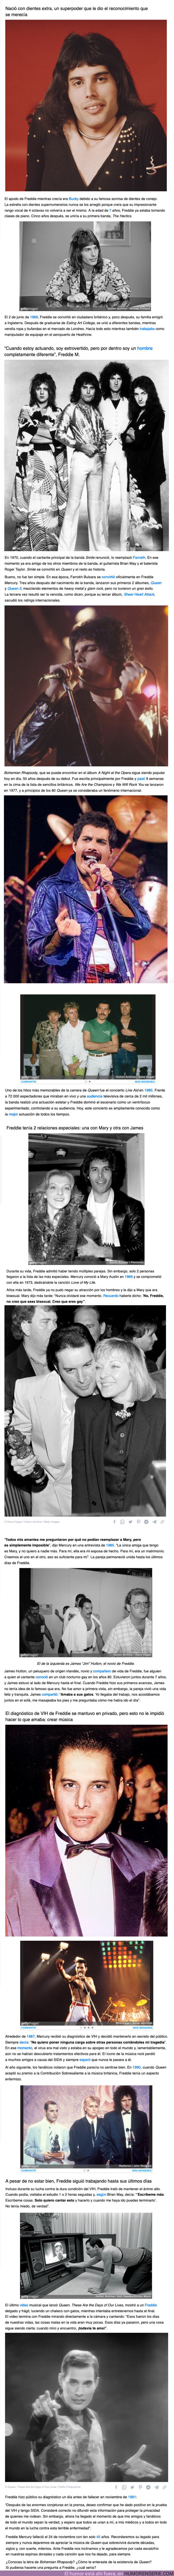 108028 - GALERÍA: Historia de la leyenda eterna, Freddie Mercury, su carrera, sus amores y cómo pasó sus últimos días